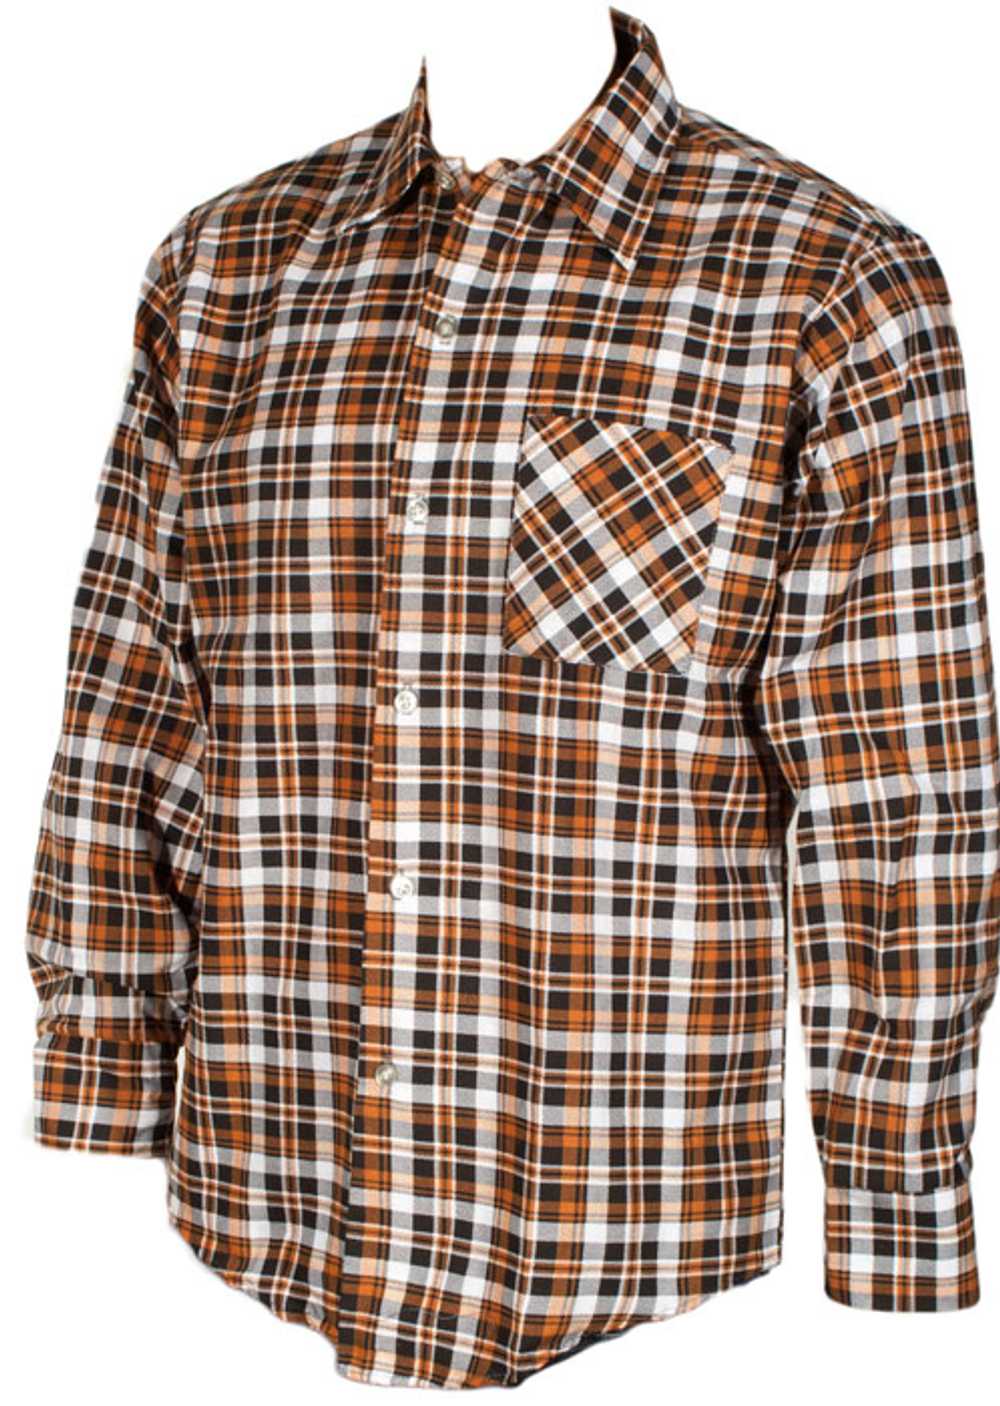 Never worn 1960s Flannel Shirt - Gem